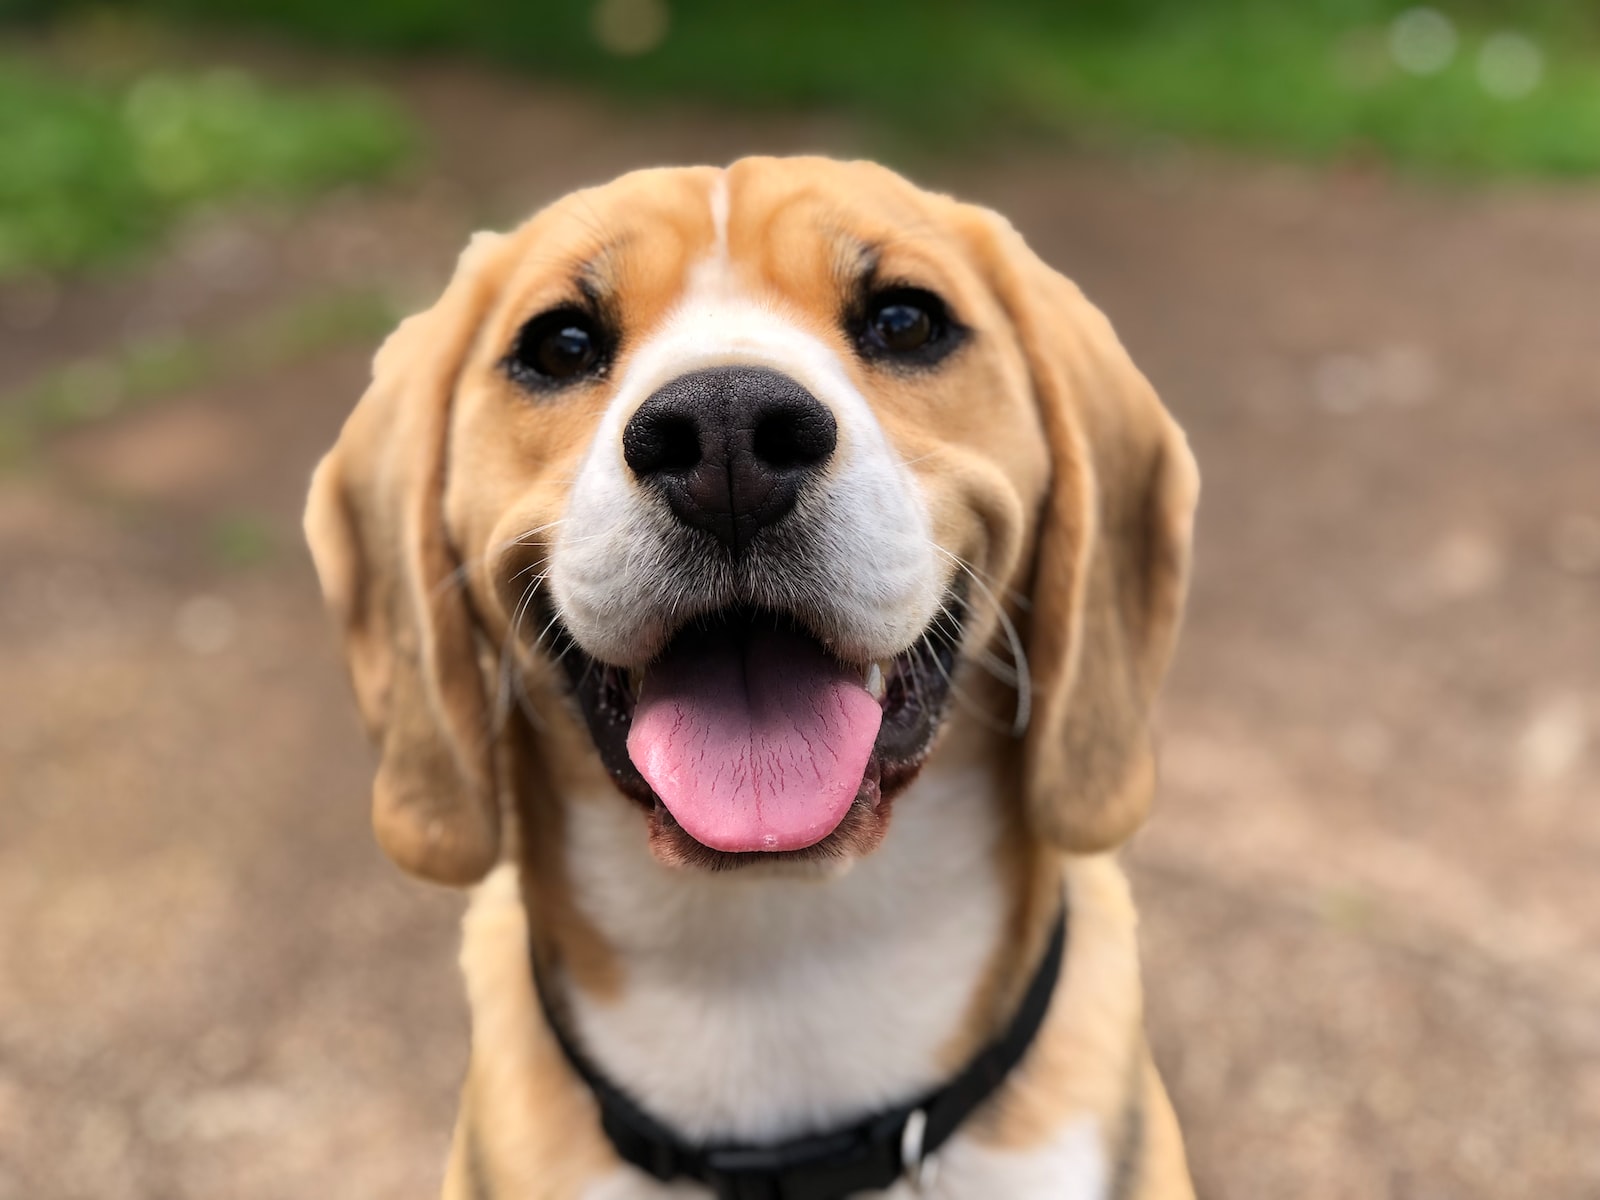 כל מה שרציתם לדעת על טיפול הידרותרפיה לכלבים